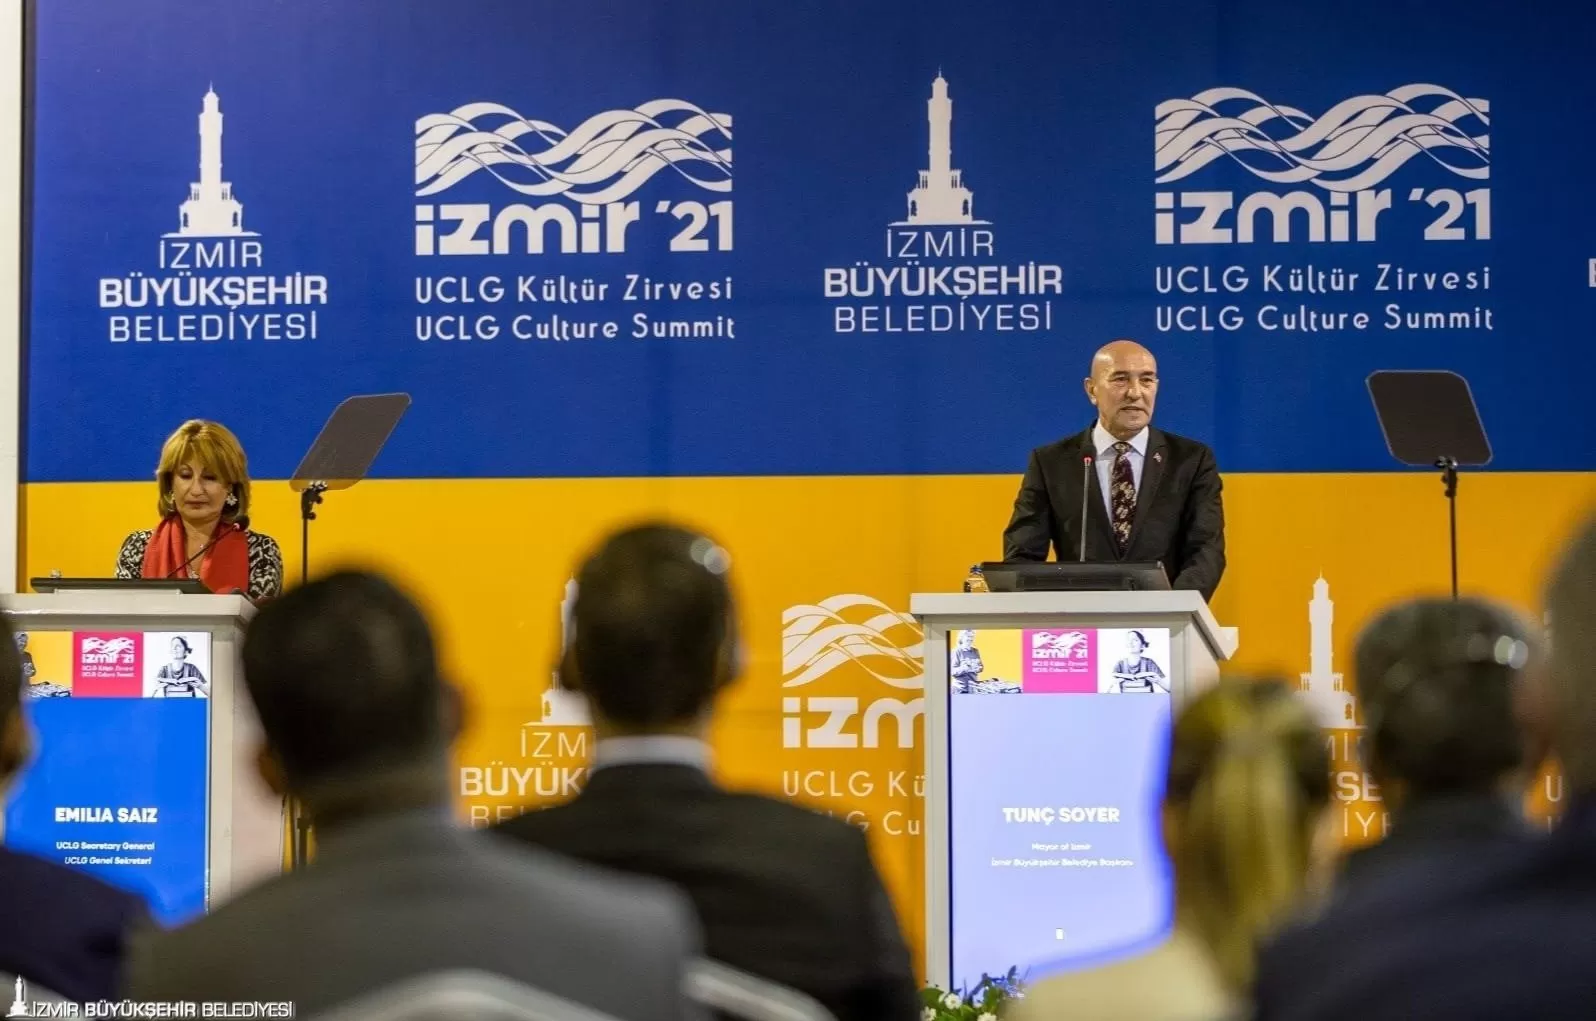 İzmir Büyükşehir Belediyesi, İzmir Kültür Fonu (İzKF) kapsamında düzenlenen Döngüsel Kültür Proje Yarışması'nın sonuçlarını açıkladı.